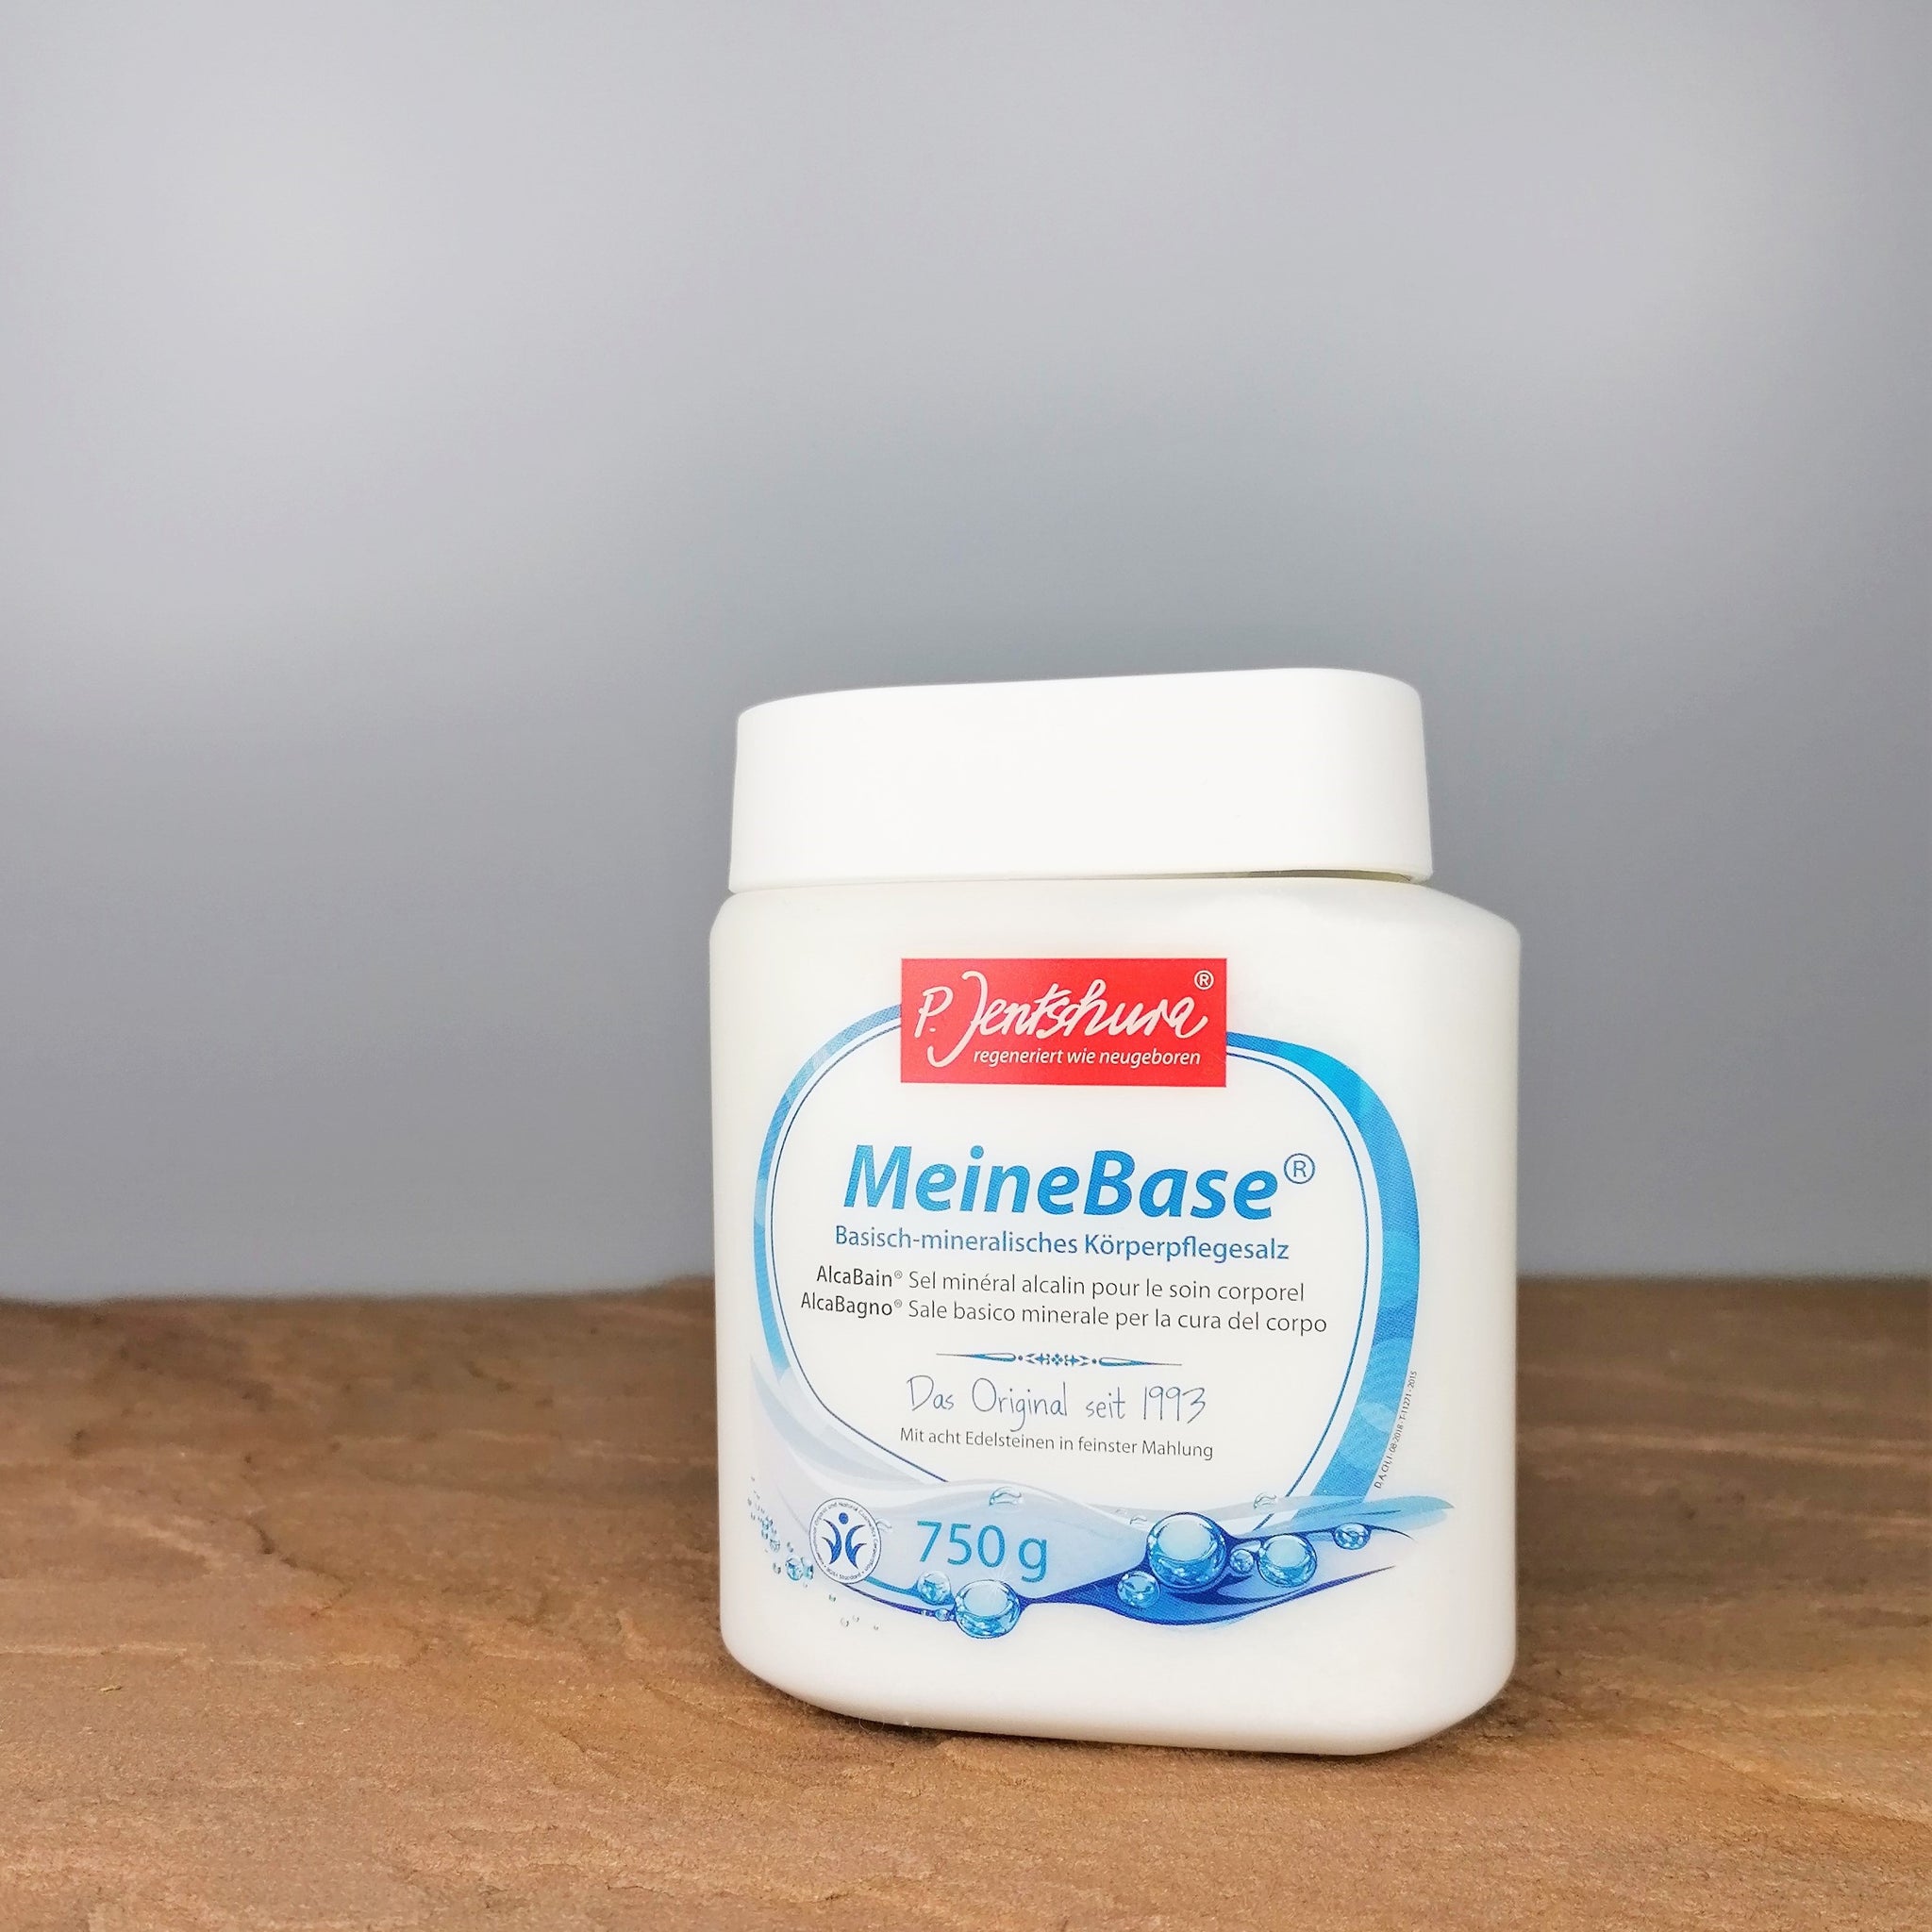 MeineBase® Basisch-mineralisches Körperpflegesalz 750g